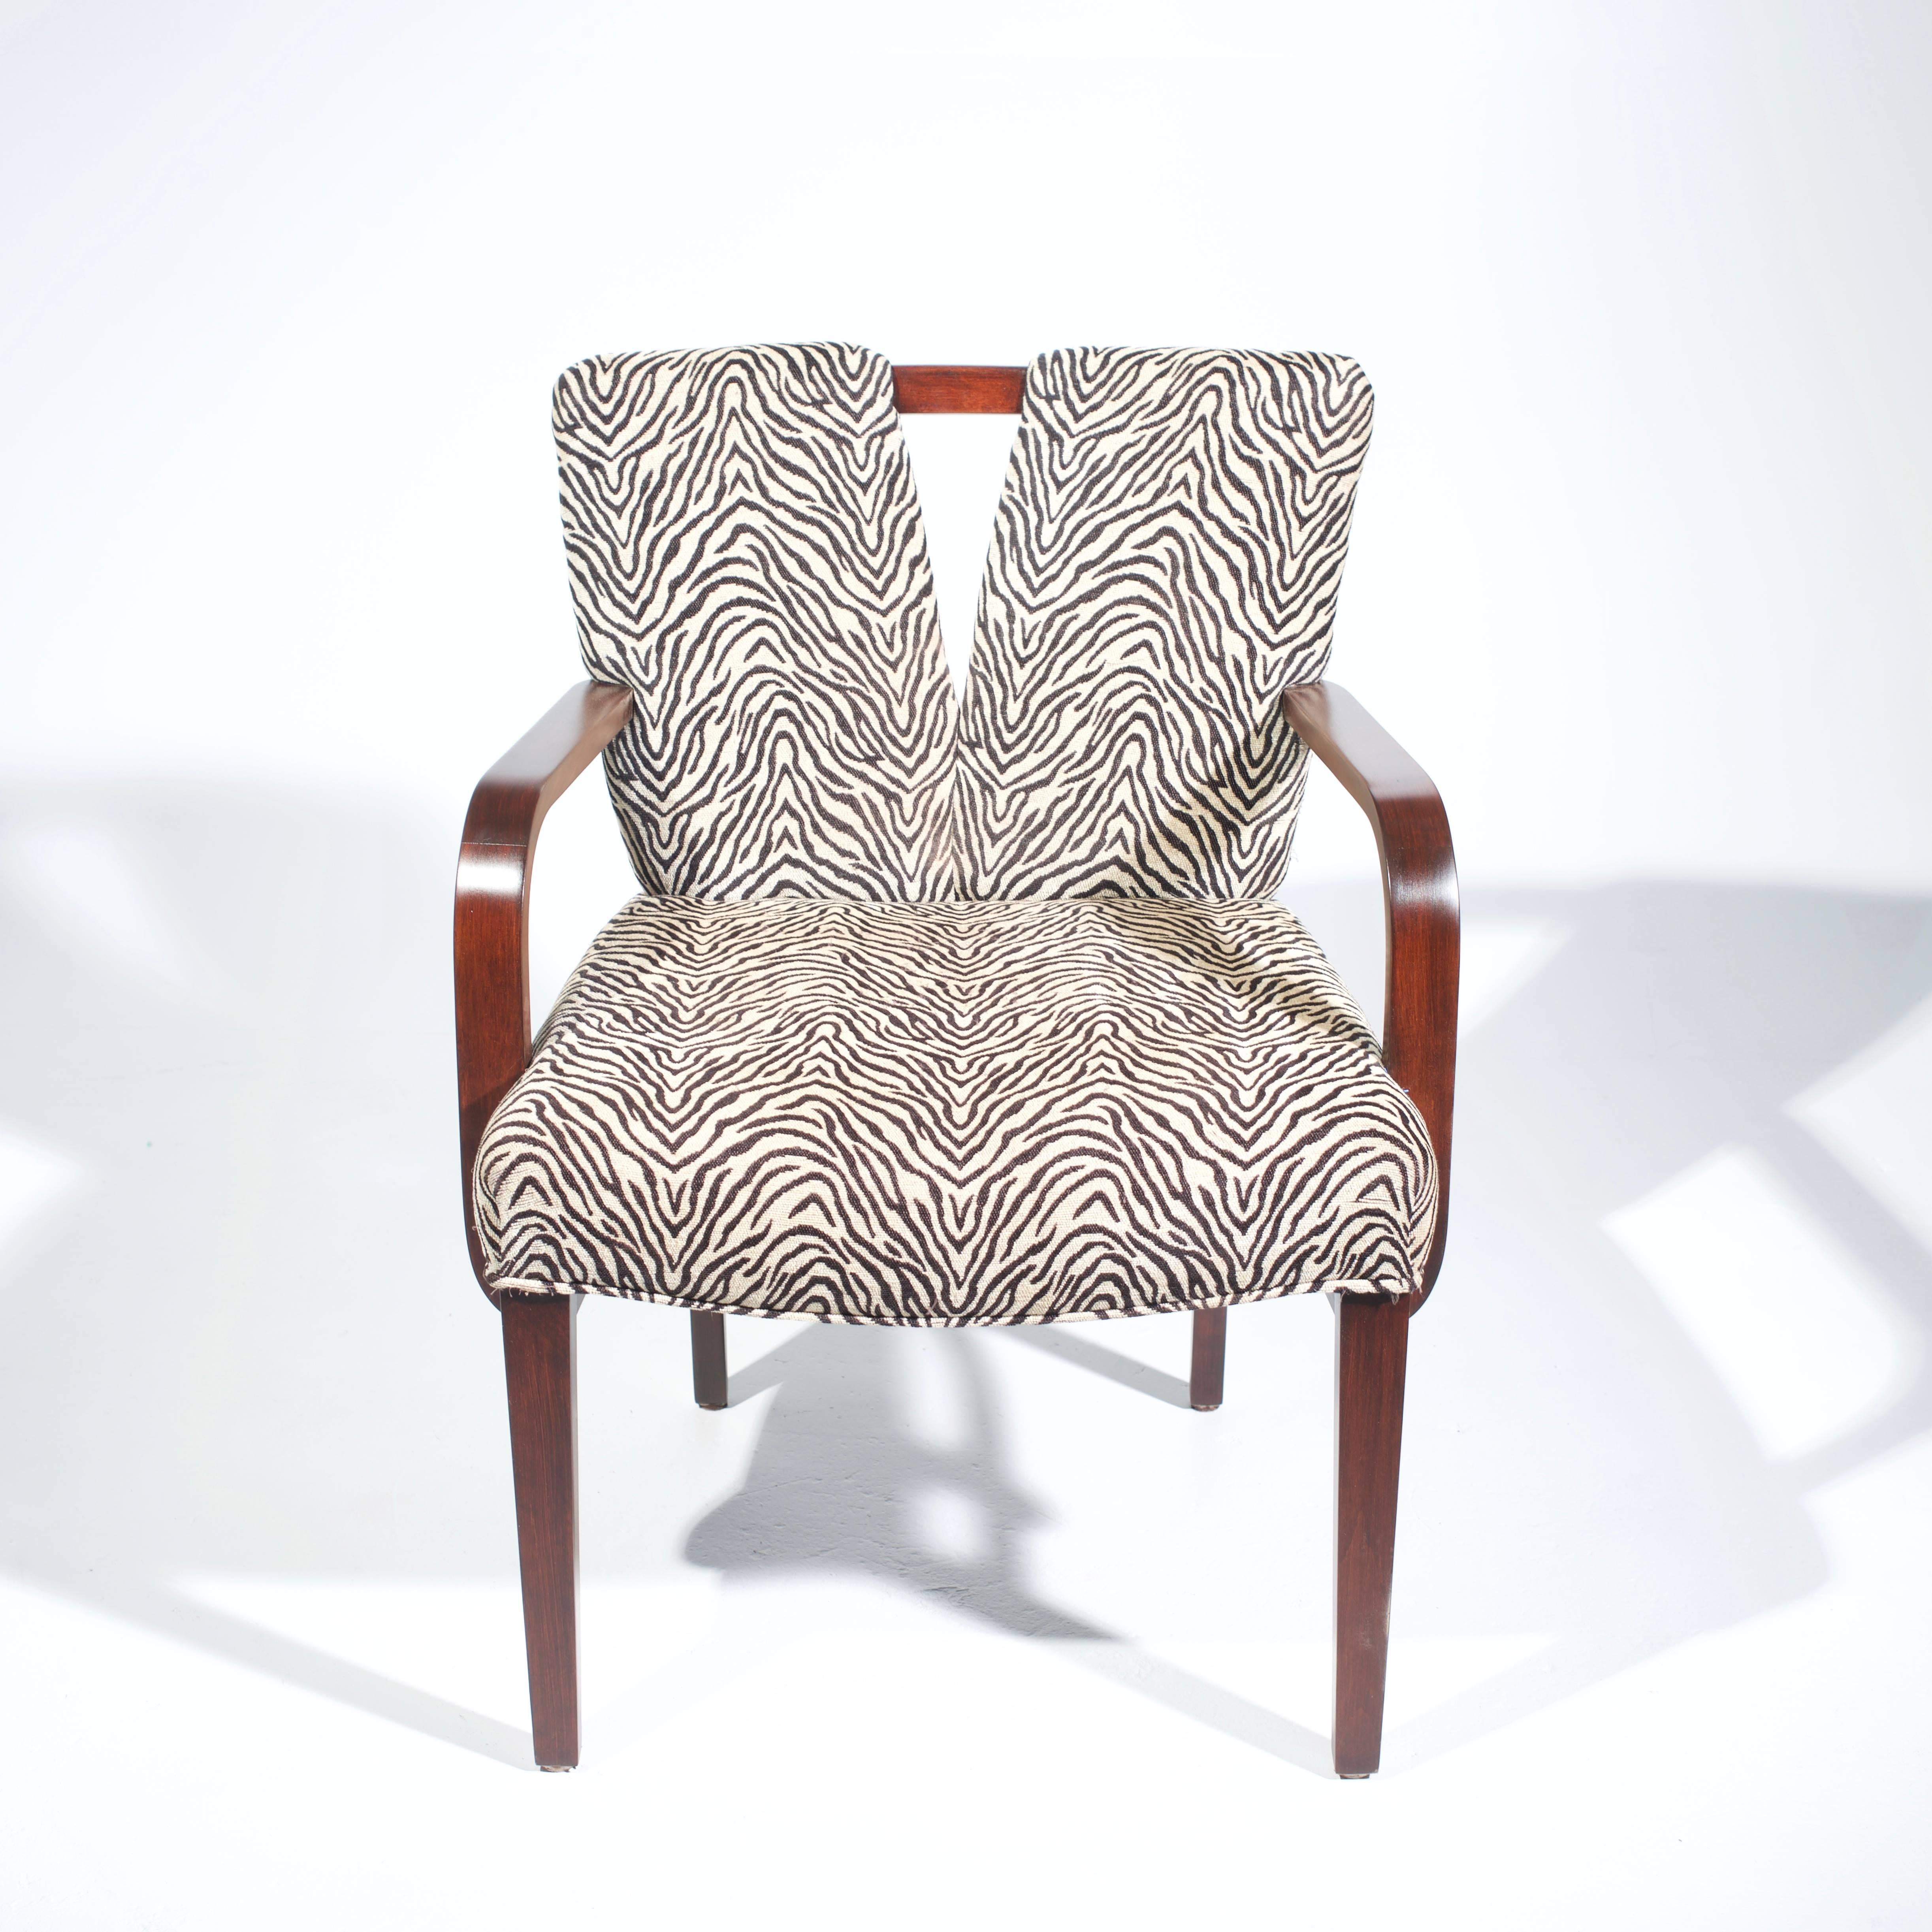 Schöner Satz von sechs Paul Frankl Esszimmerstühlen für Johnson Furniture. Die Gestelle der Stühle sind aus gebranntem Eichenholz gefertigt und sehr stabil und bequem. 

Maße: 32 Zoll H x 23 Zoll B x 24 Zoll T
32 Zoll H x 25,5 Zoll B x 25 Zoll T.